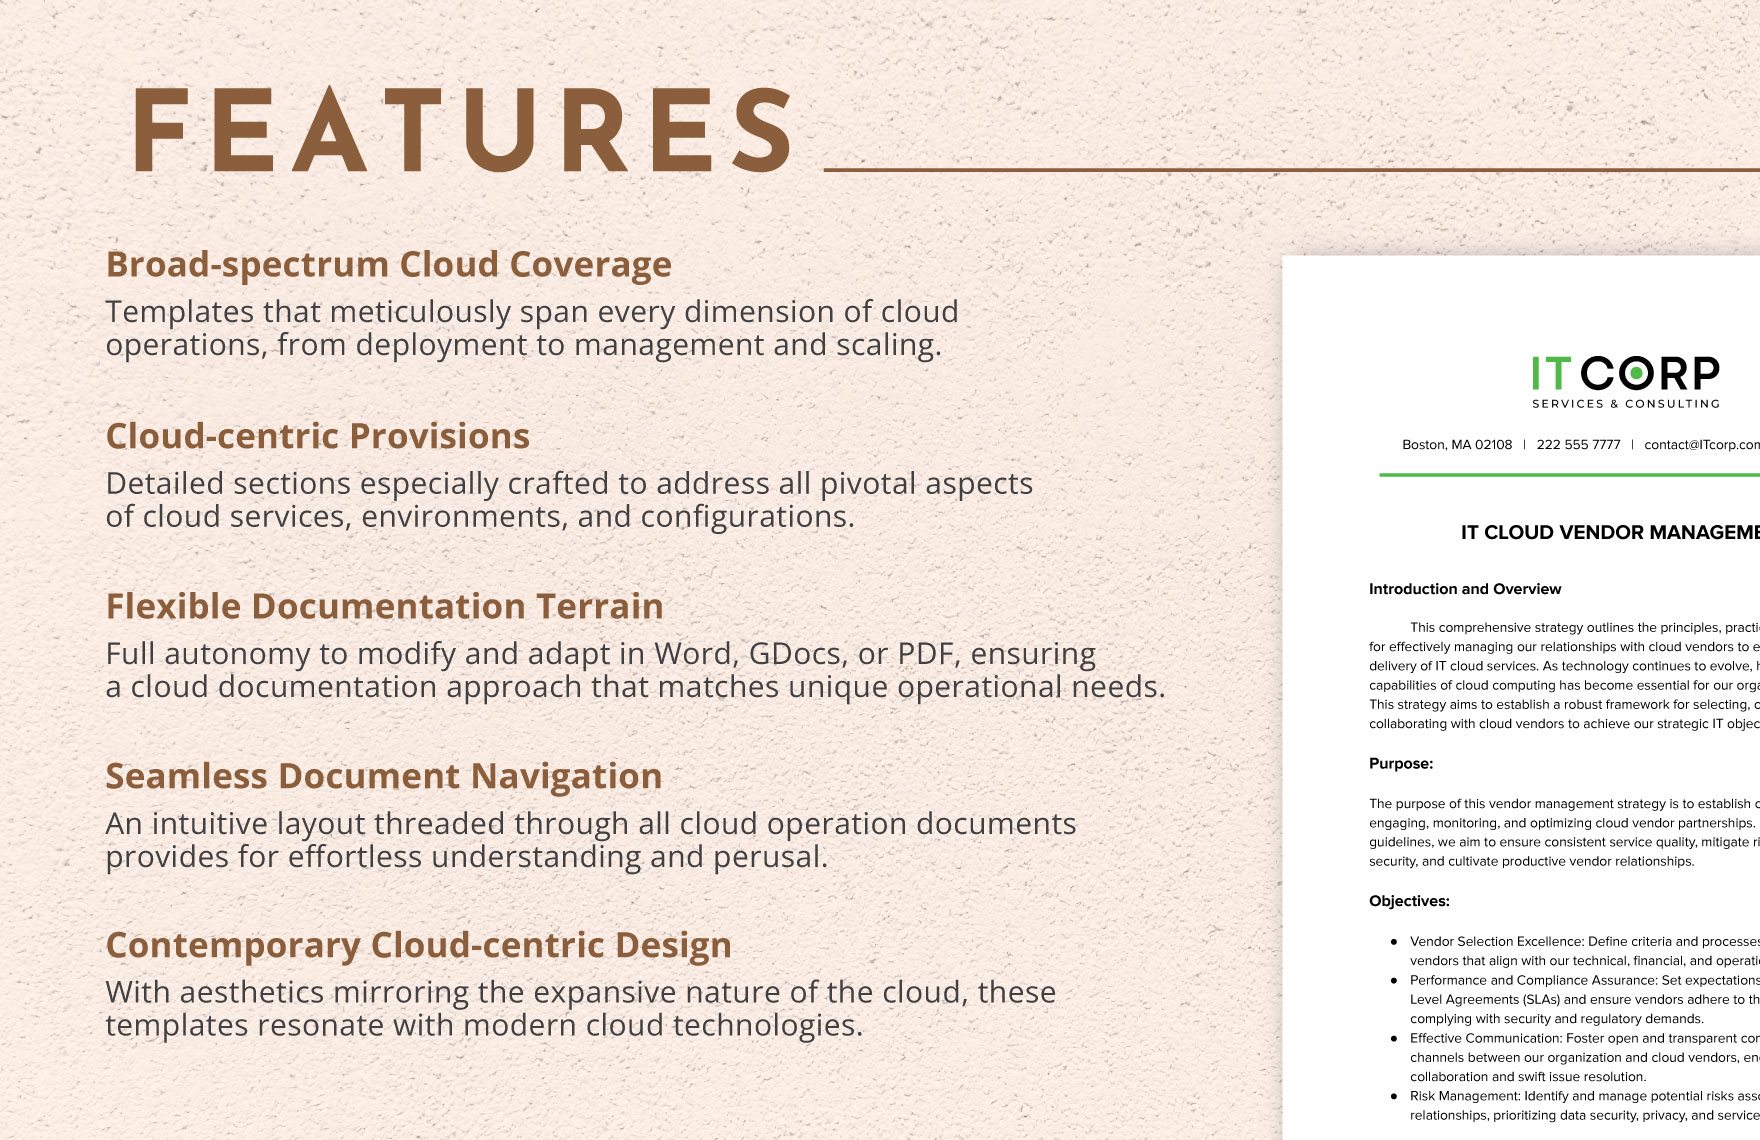 IT Cloud Vendor Management Template